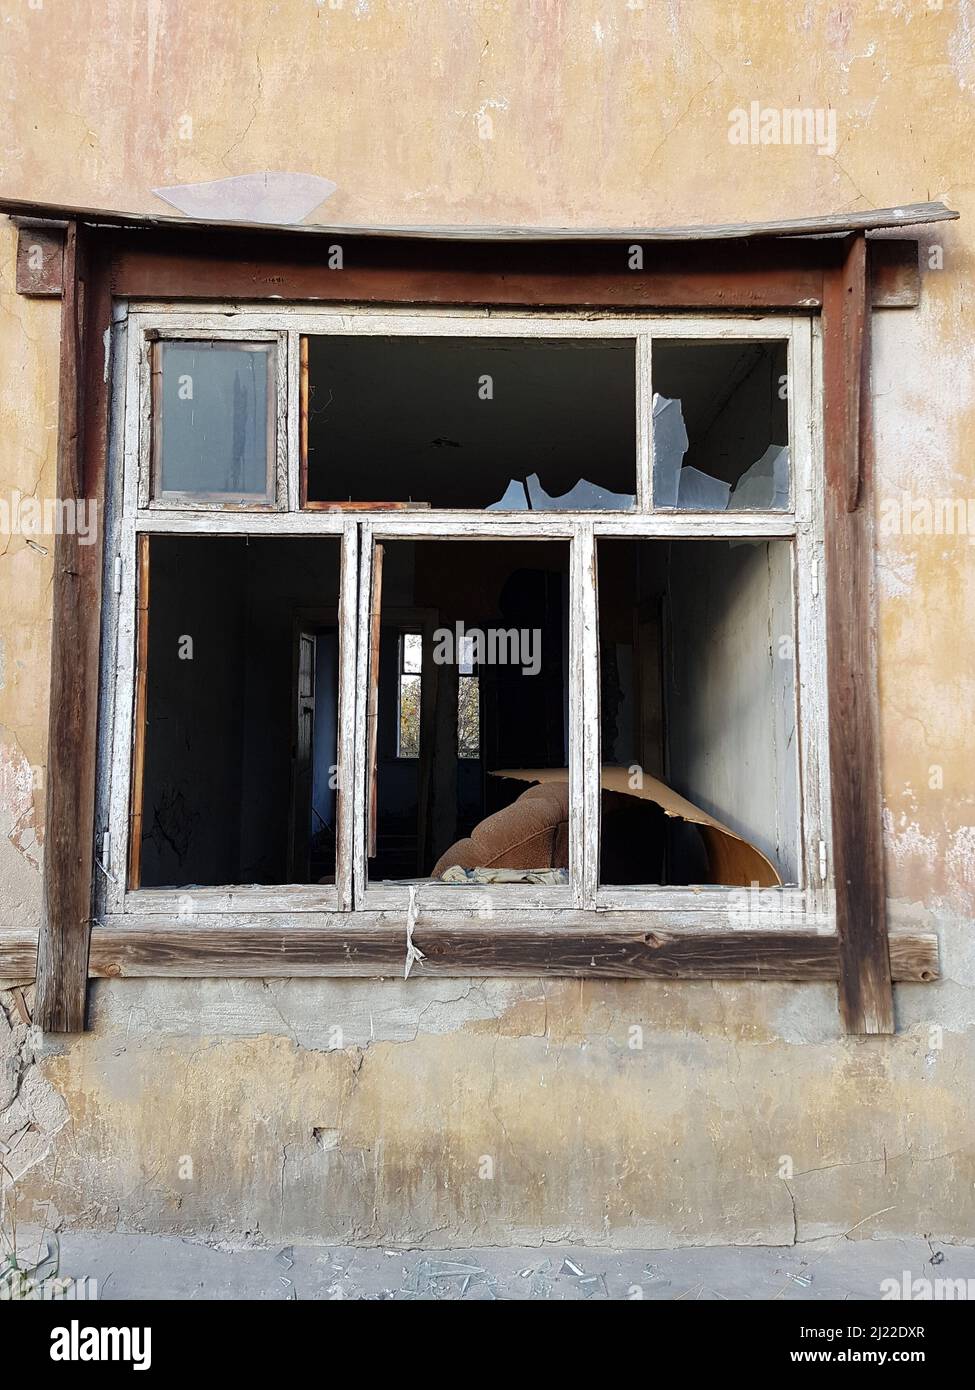 Les fenêtres d'une ancienne maison abandonnée avec du verre brisé. Un bâtiment vide sans portes ni fenêtres. Le concept de démolition ou d'effondrement d'un bâtiment Banque D'Images